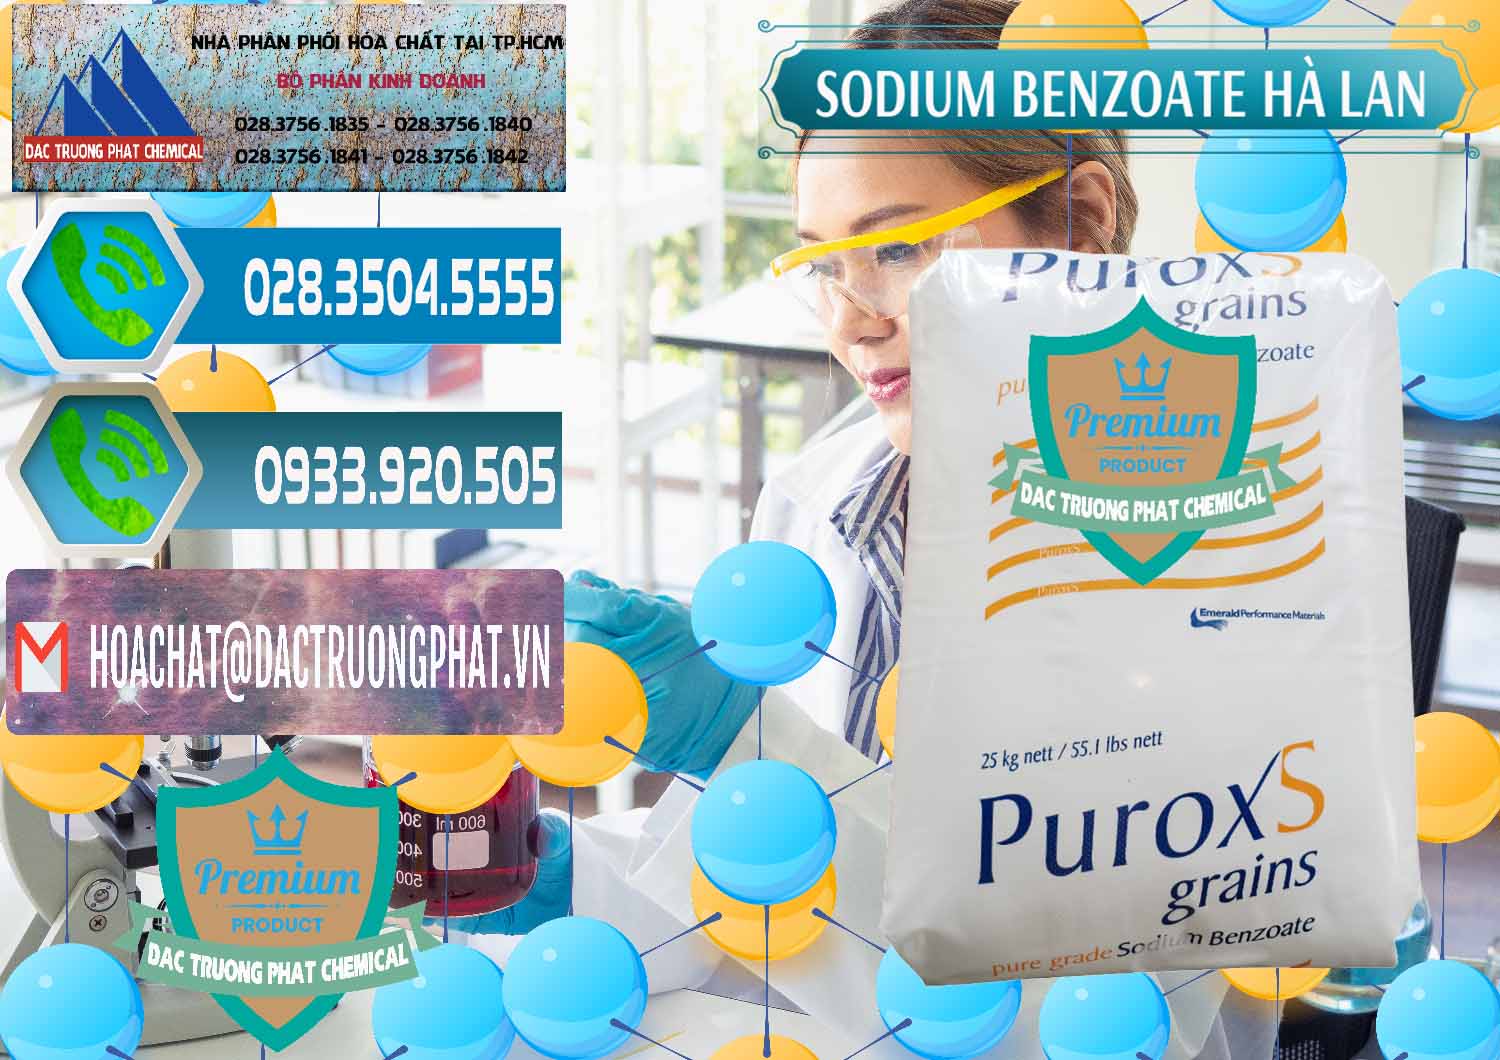 Chuyên cung ứng & bán Sodium Benzoate - Mốc Bột Puroxs Hà Lan Netherlands - 0467 - Cty phân phối ( nhập khẩu ) hóa chất tại TP.HCM - congtyhoachat.net